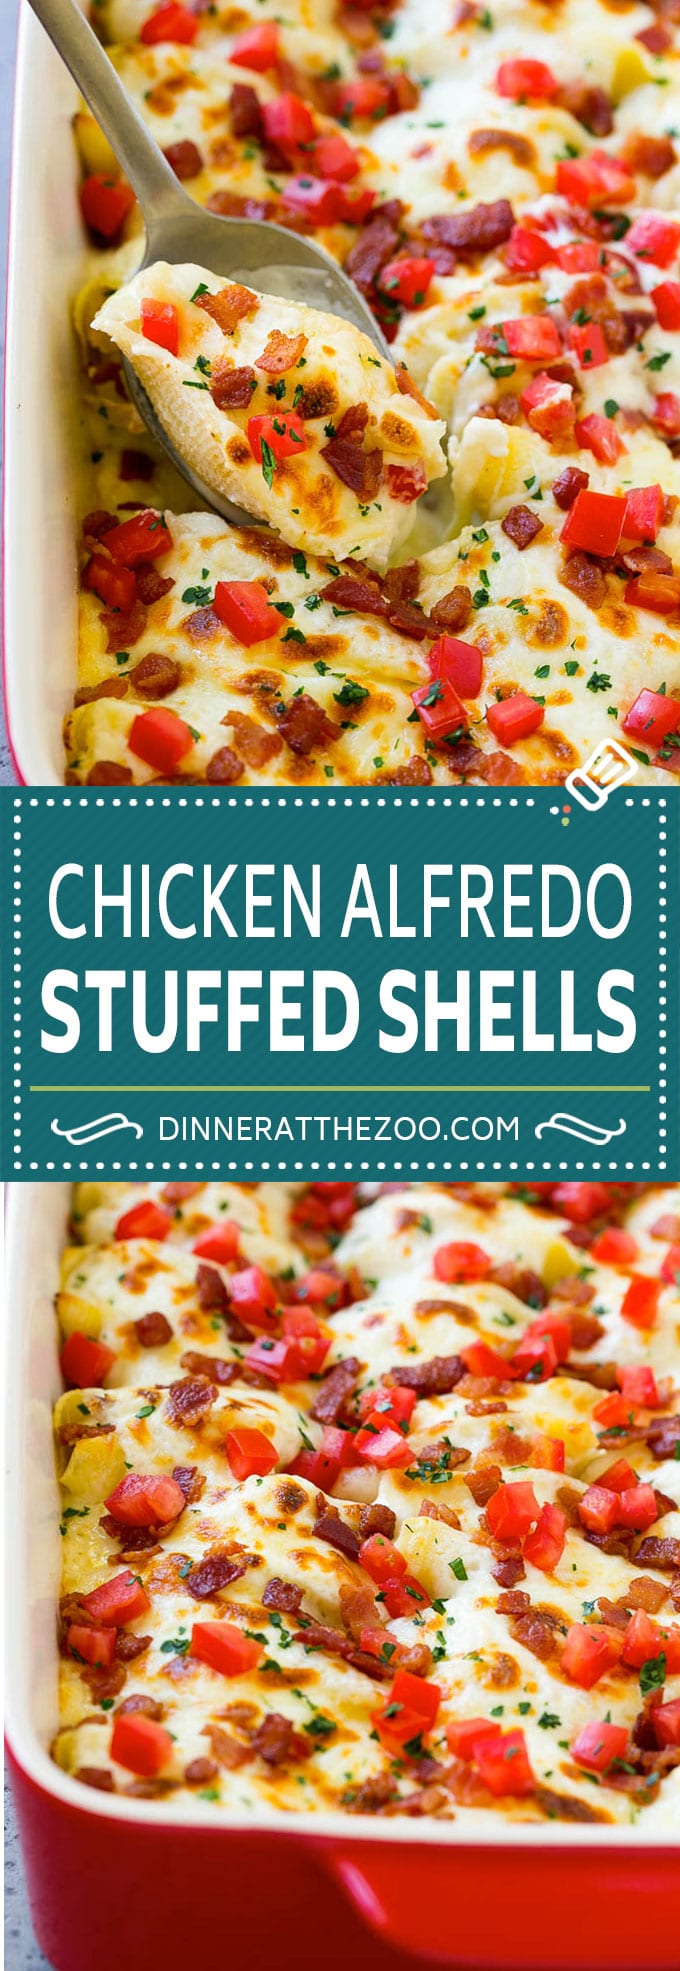 Chicken Alfredo Stuffed Shells Recipe | Stuffed Shells | Chicken Stuffed Shells | Baked Pasta #stuffedshells #alfredo #chicken #pasta #cheese #dinner #dinneratthezoo